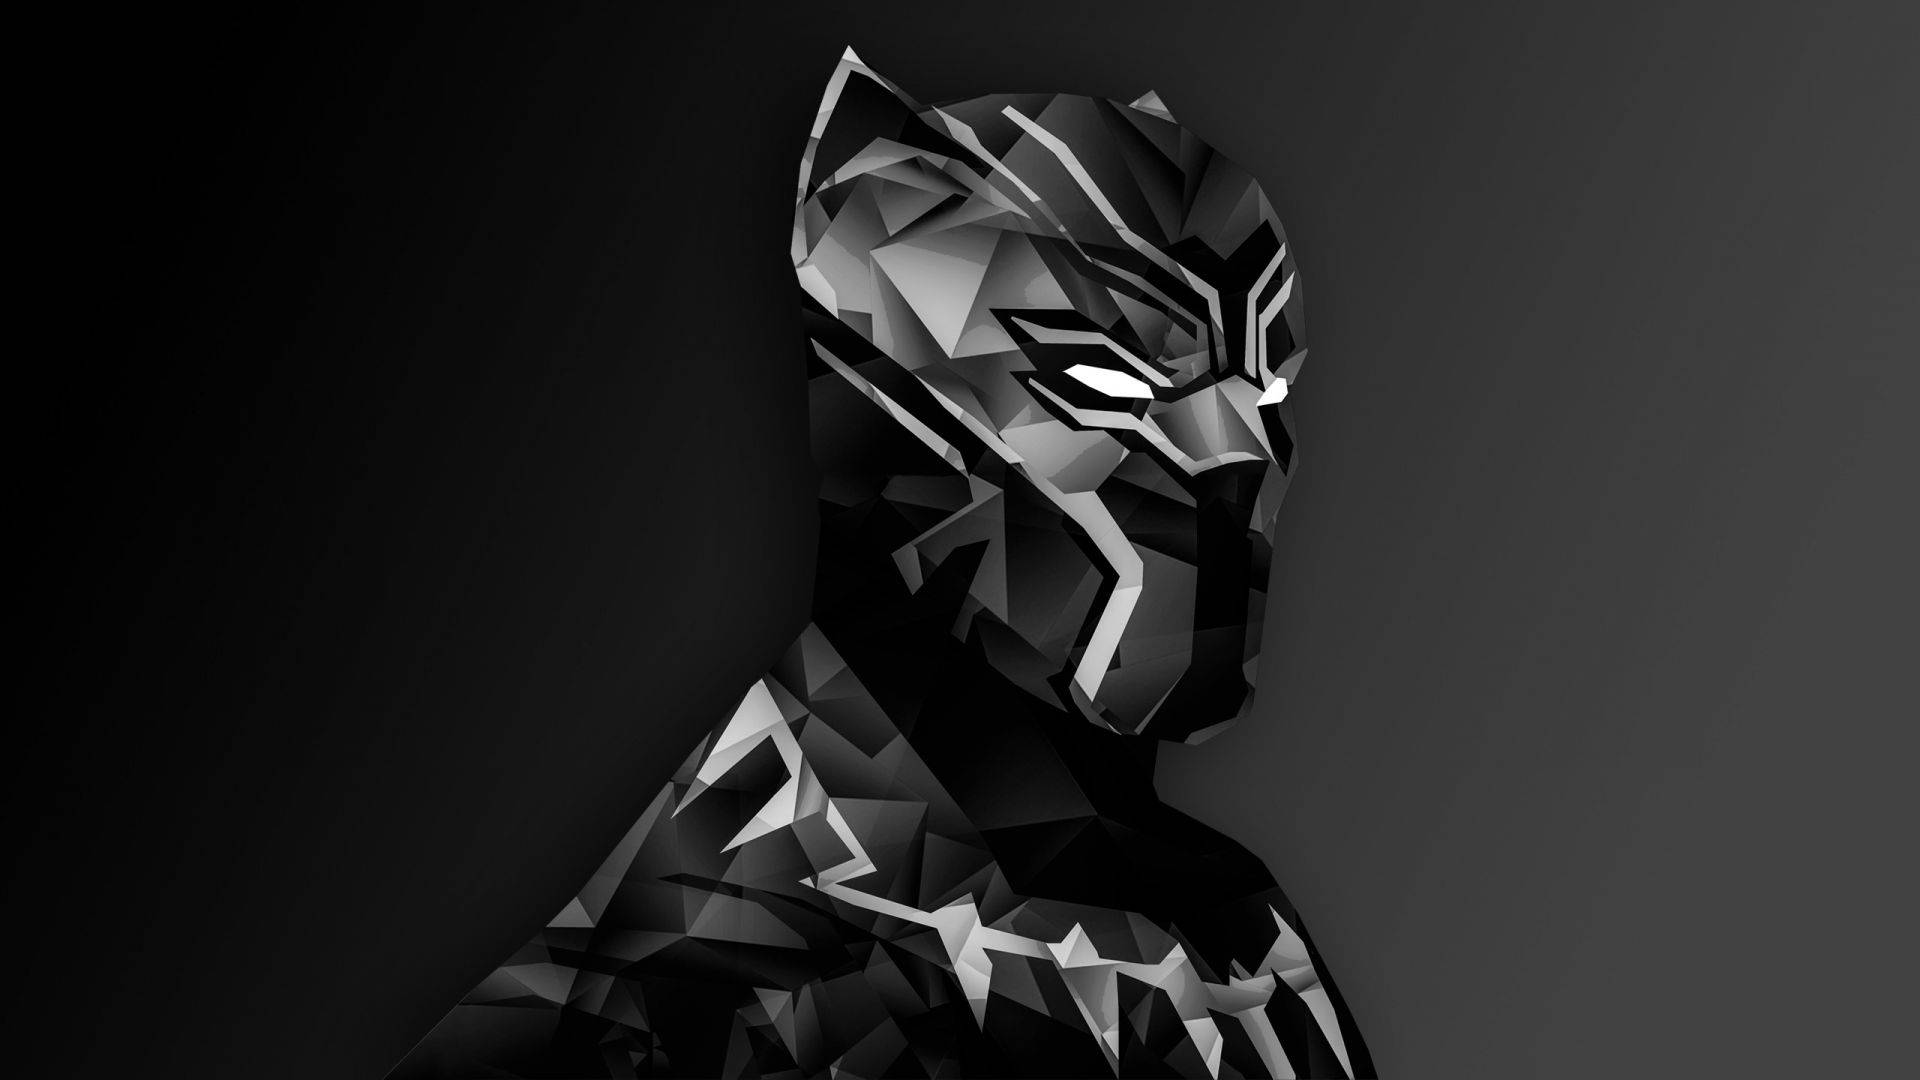 Sort Panther Superhero Digital Kunst Design: Bliv fanget af det imponerende design af digital kunst-tegninger af Sort Panther superhero. Wallpaper